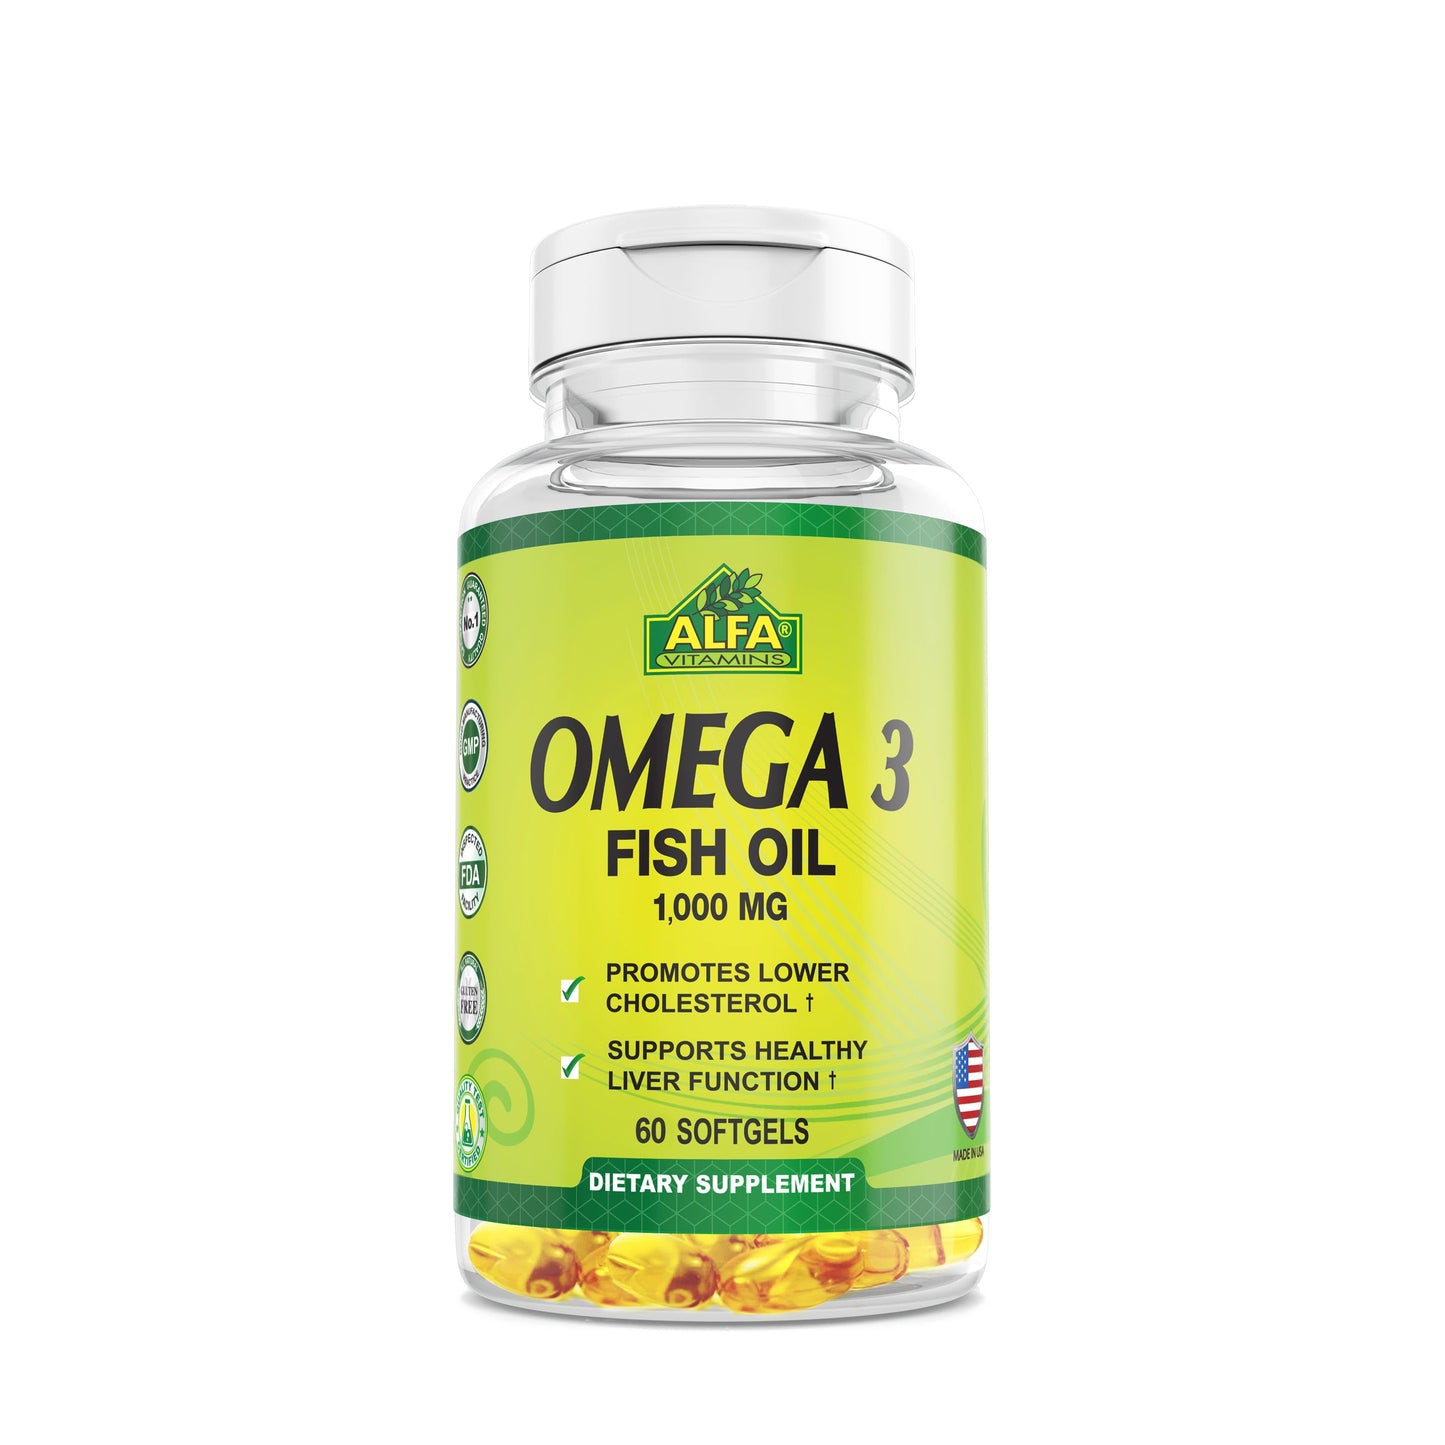 Omega 3 Fish Oil 1000 mg - 60 softgels